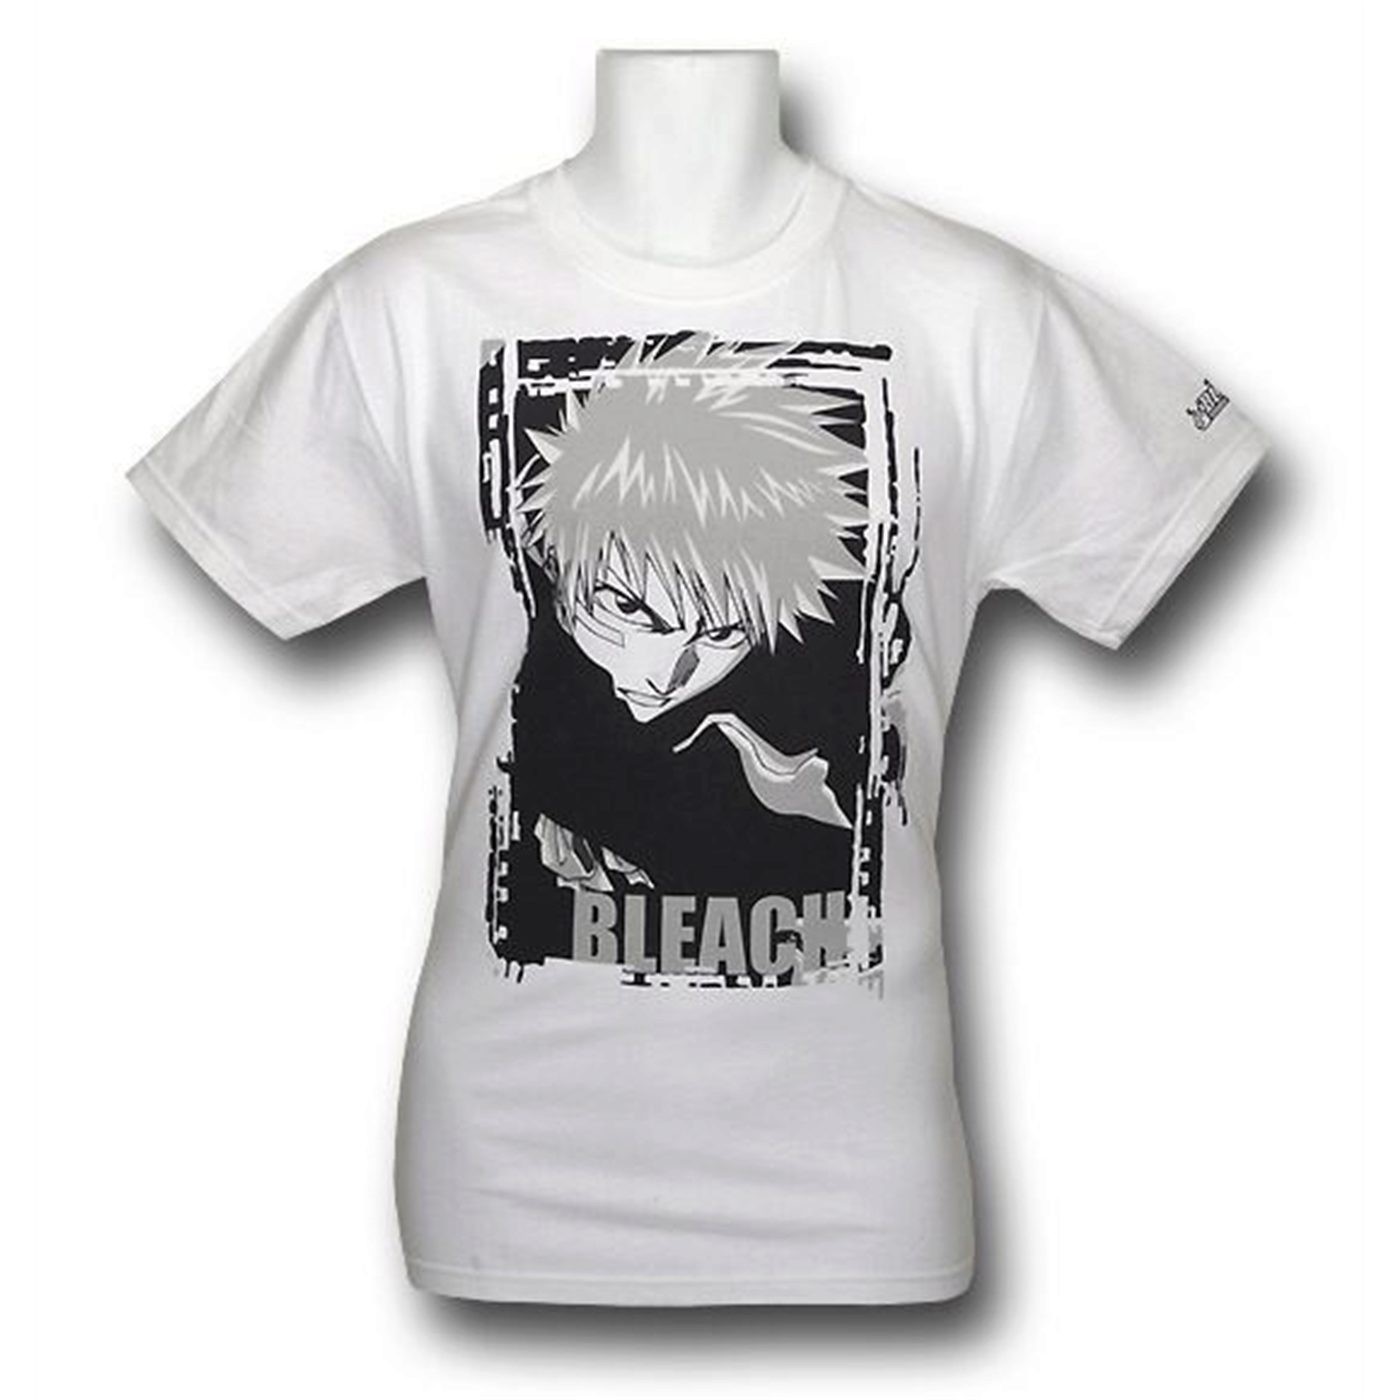 Bleach Ichigo Black and White T-Shirt